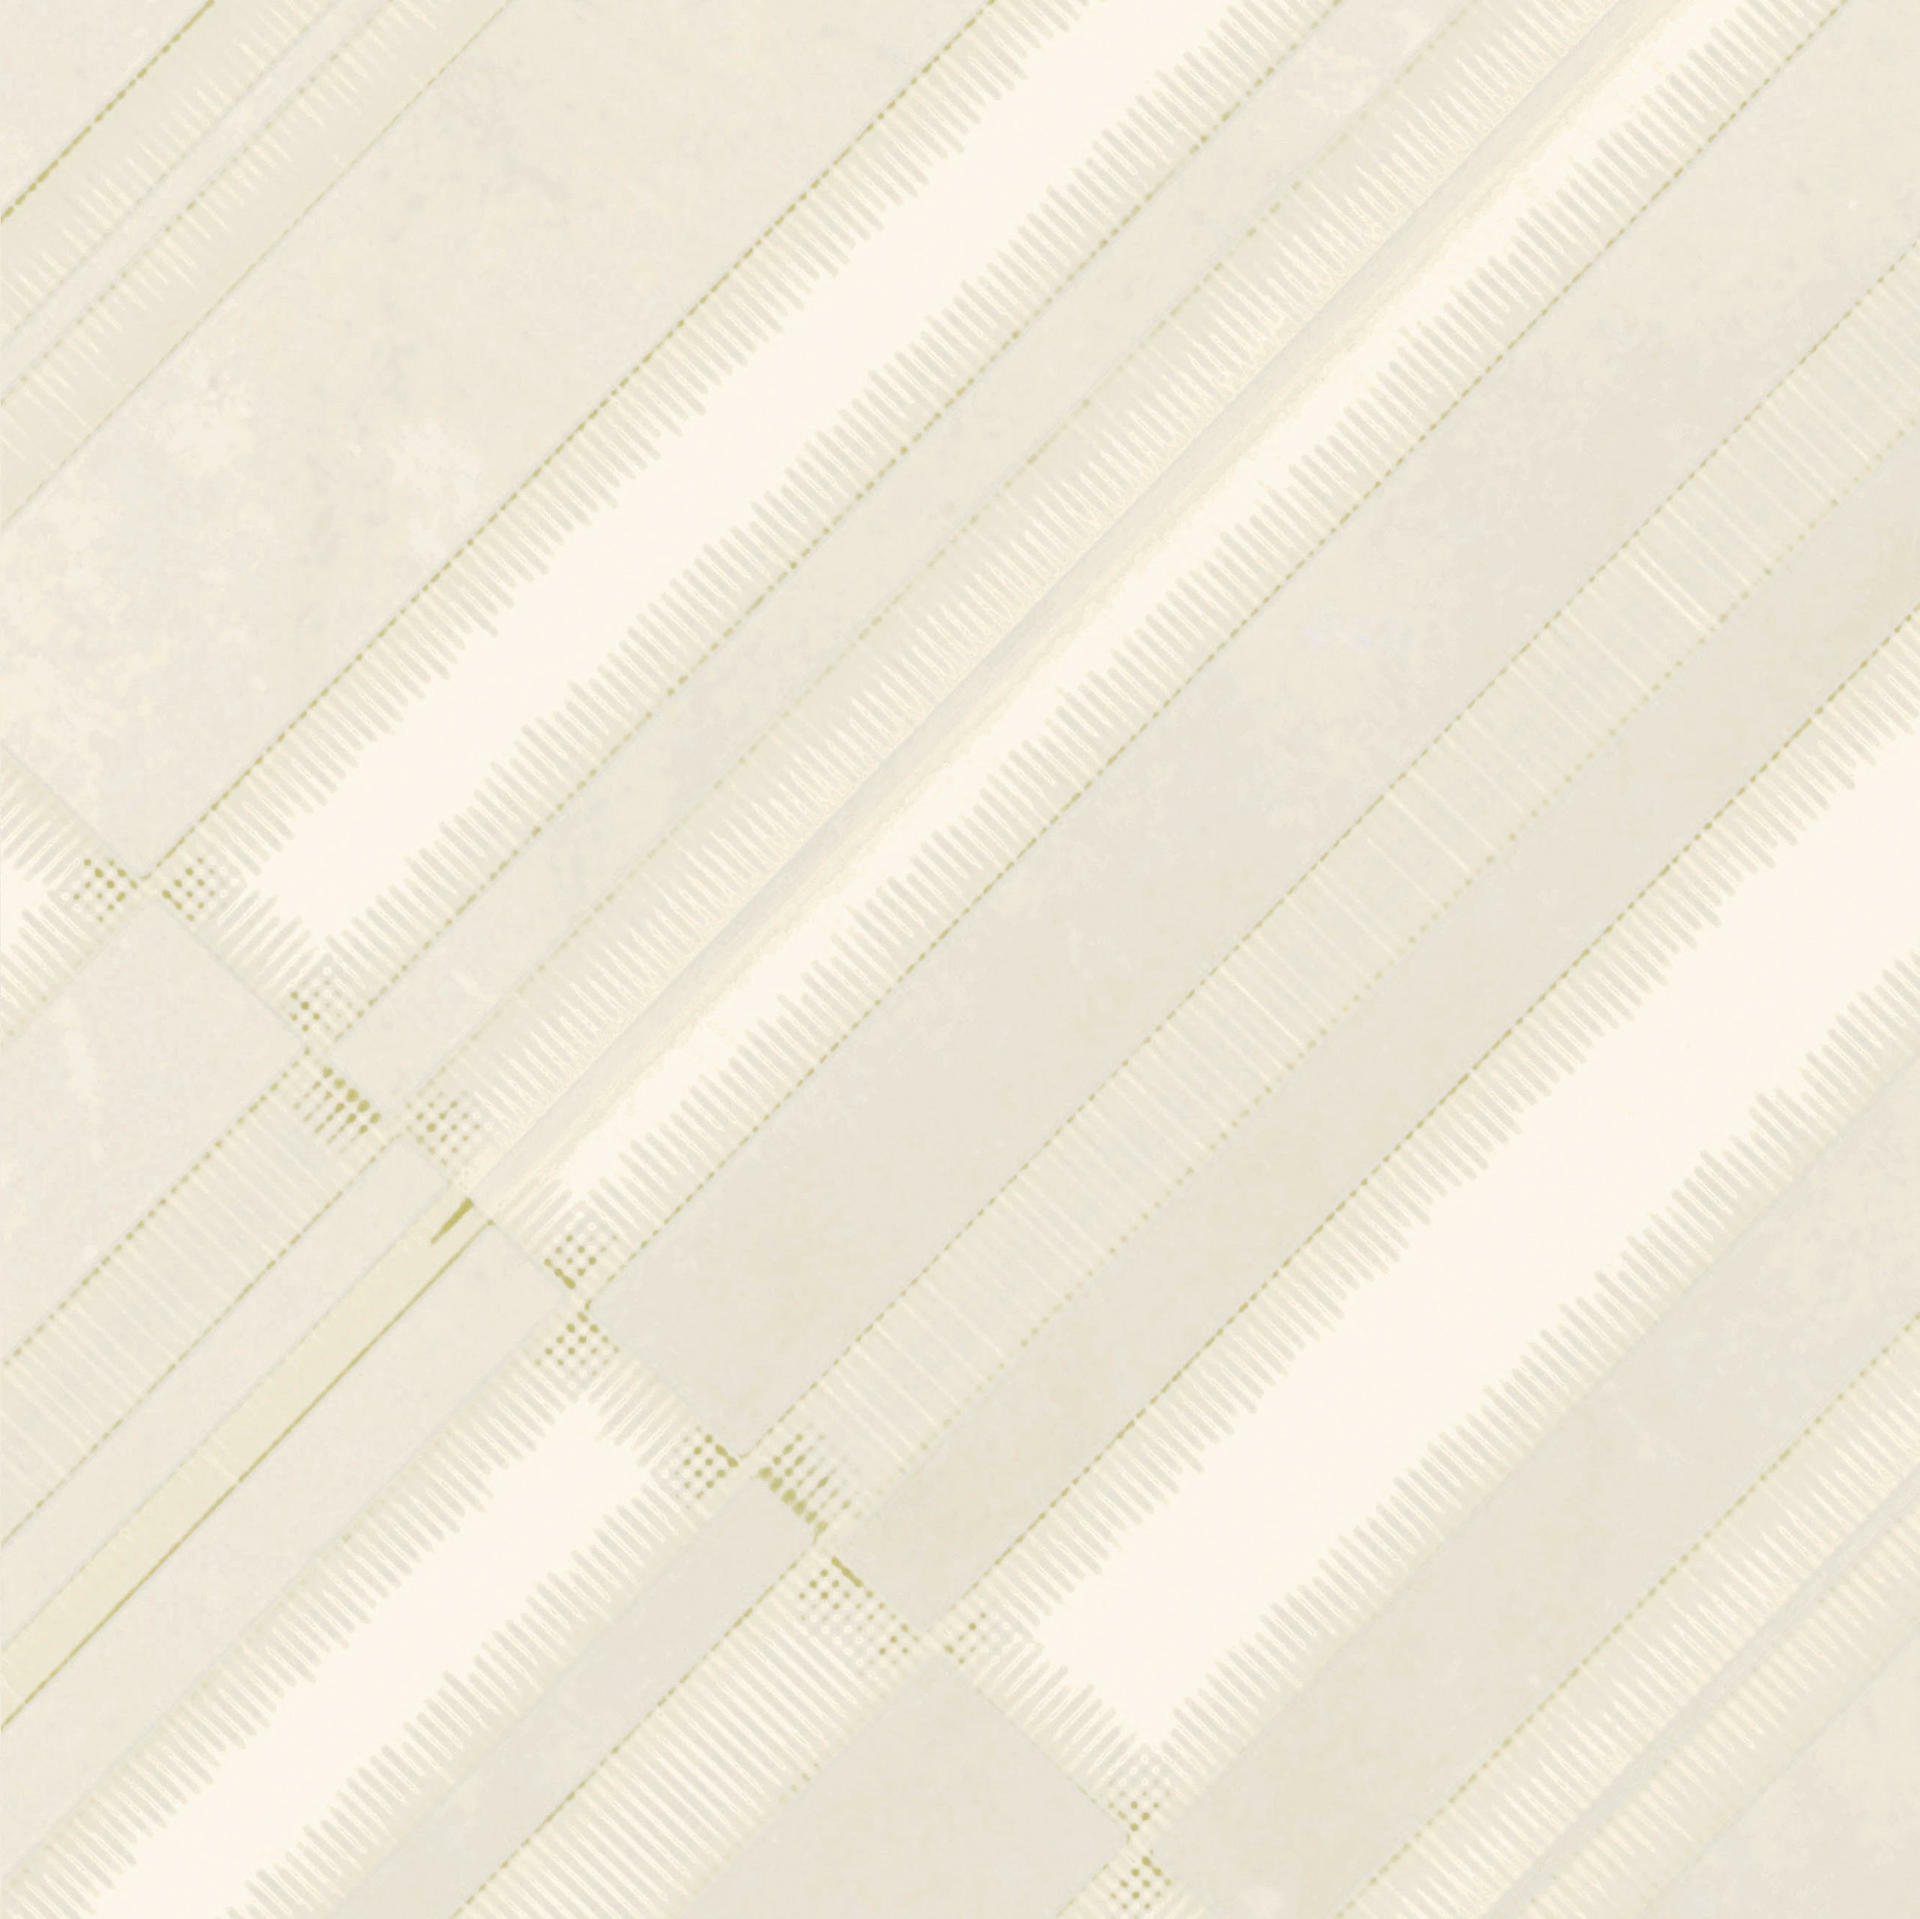 Mutina Azulej Bianco Diagonal PUA19 20x20cm rectified 10mm